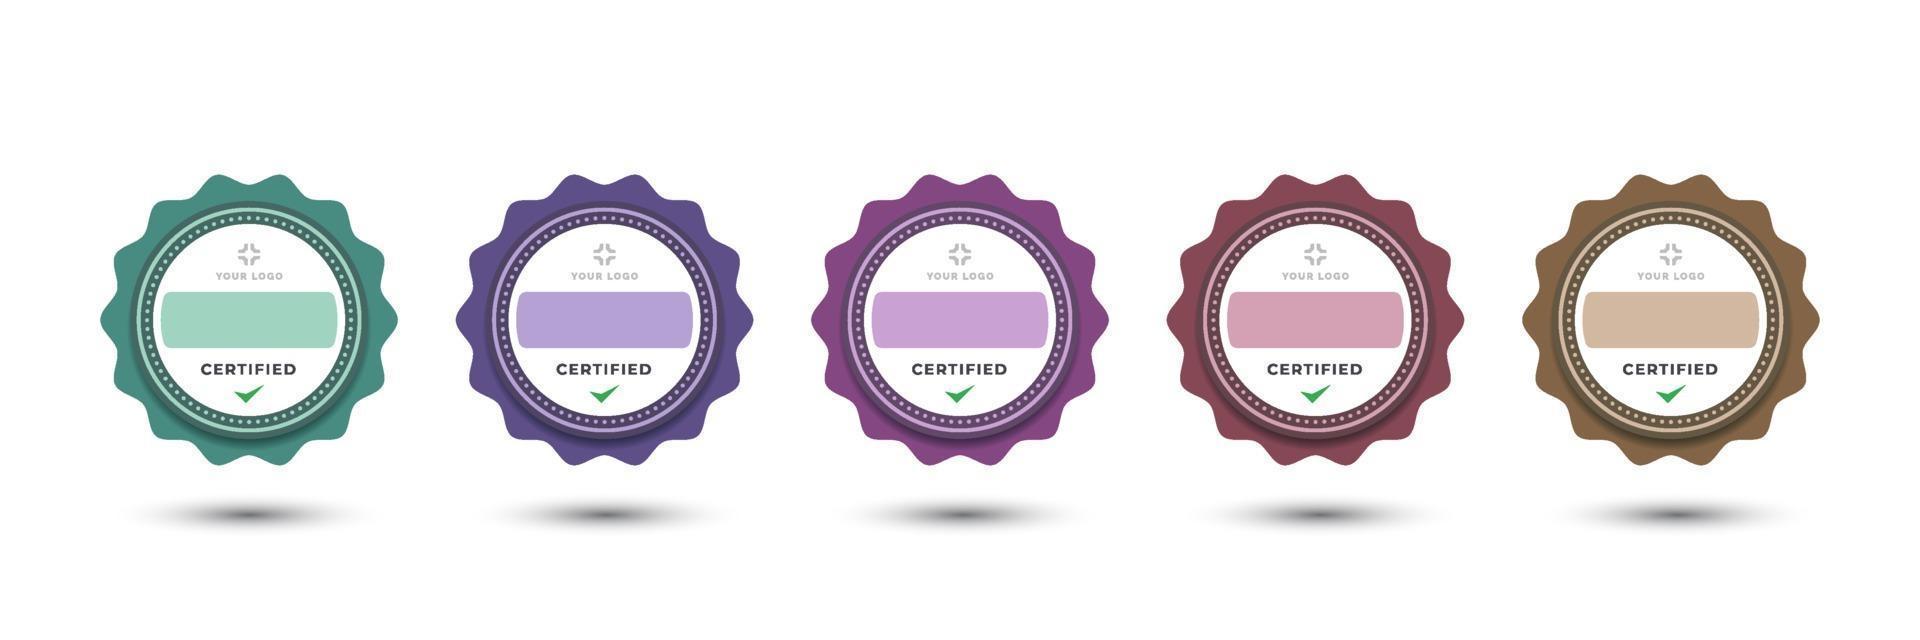 création de logo de badge pour les affaires de la société style floral arrondi décoratif féminin. set bundle certifier illustration vectorielle pastel coloré. vecteur